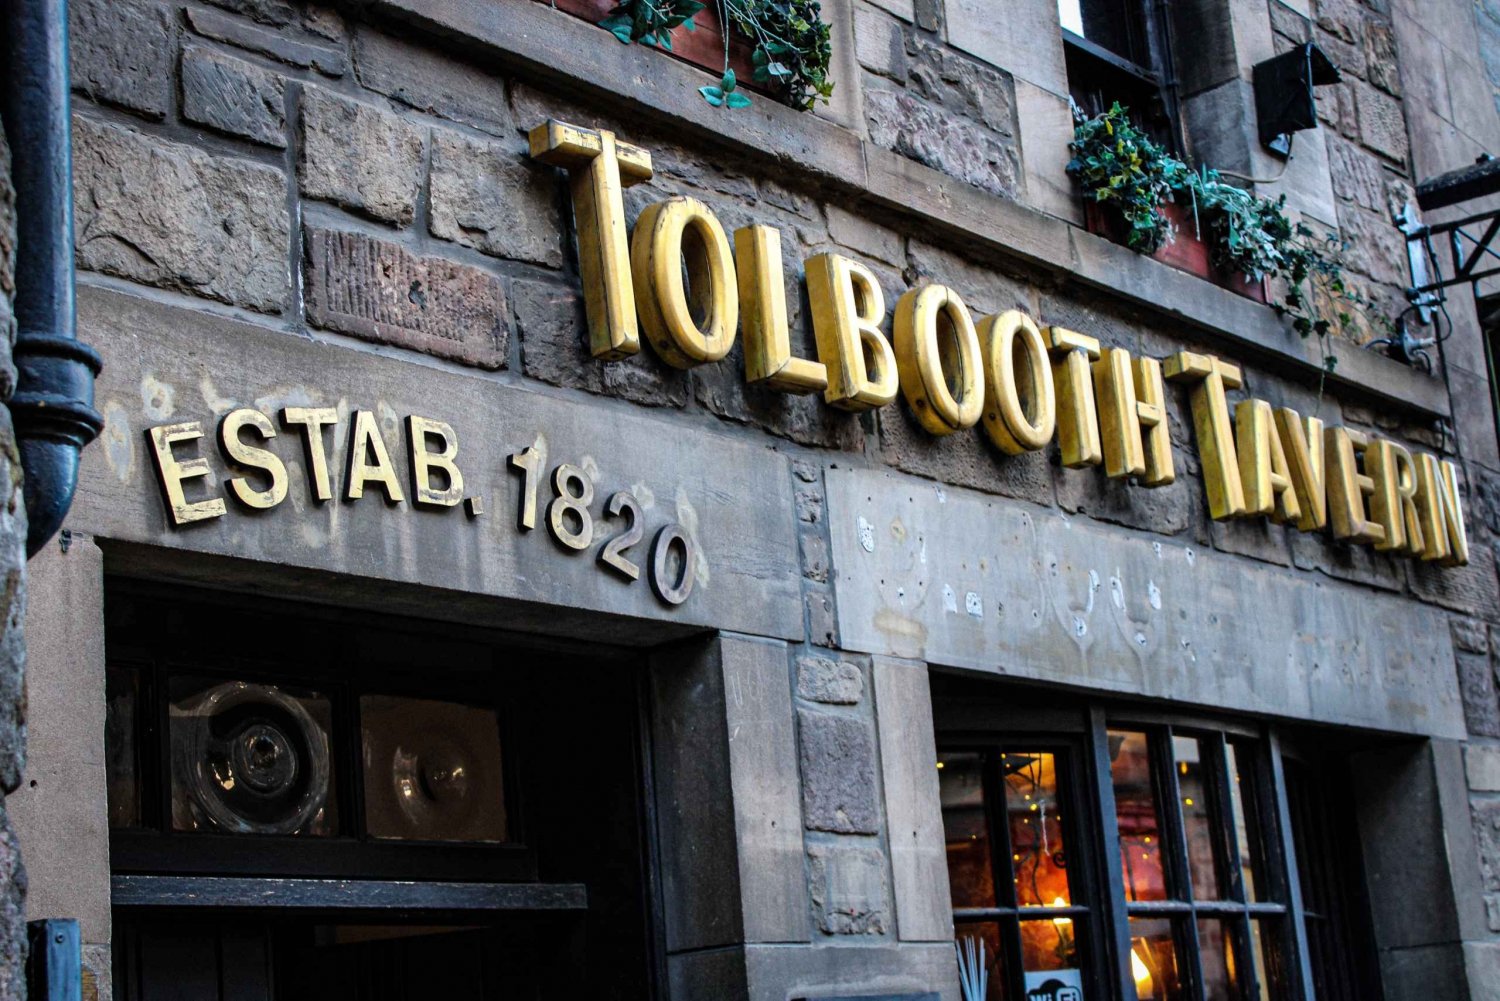 Edimburgo: Piatto di degustazione scozzese presso la Taverna Tolbooth